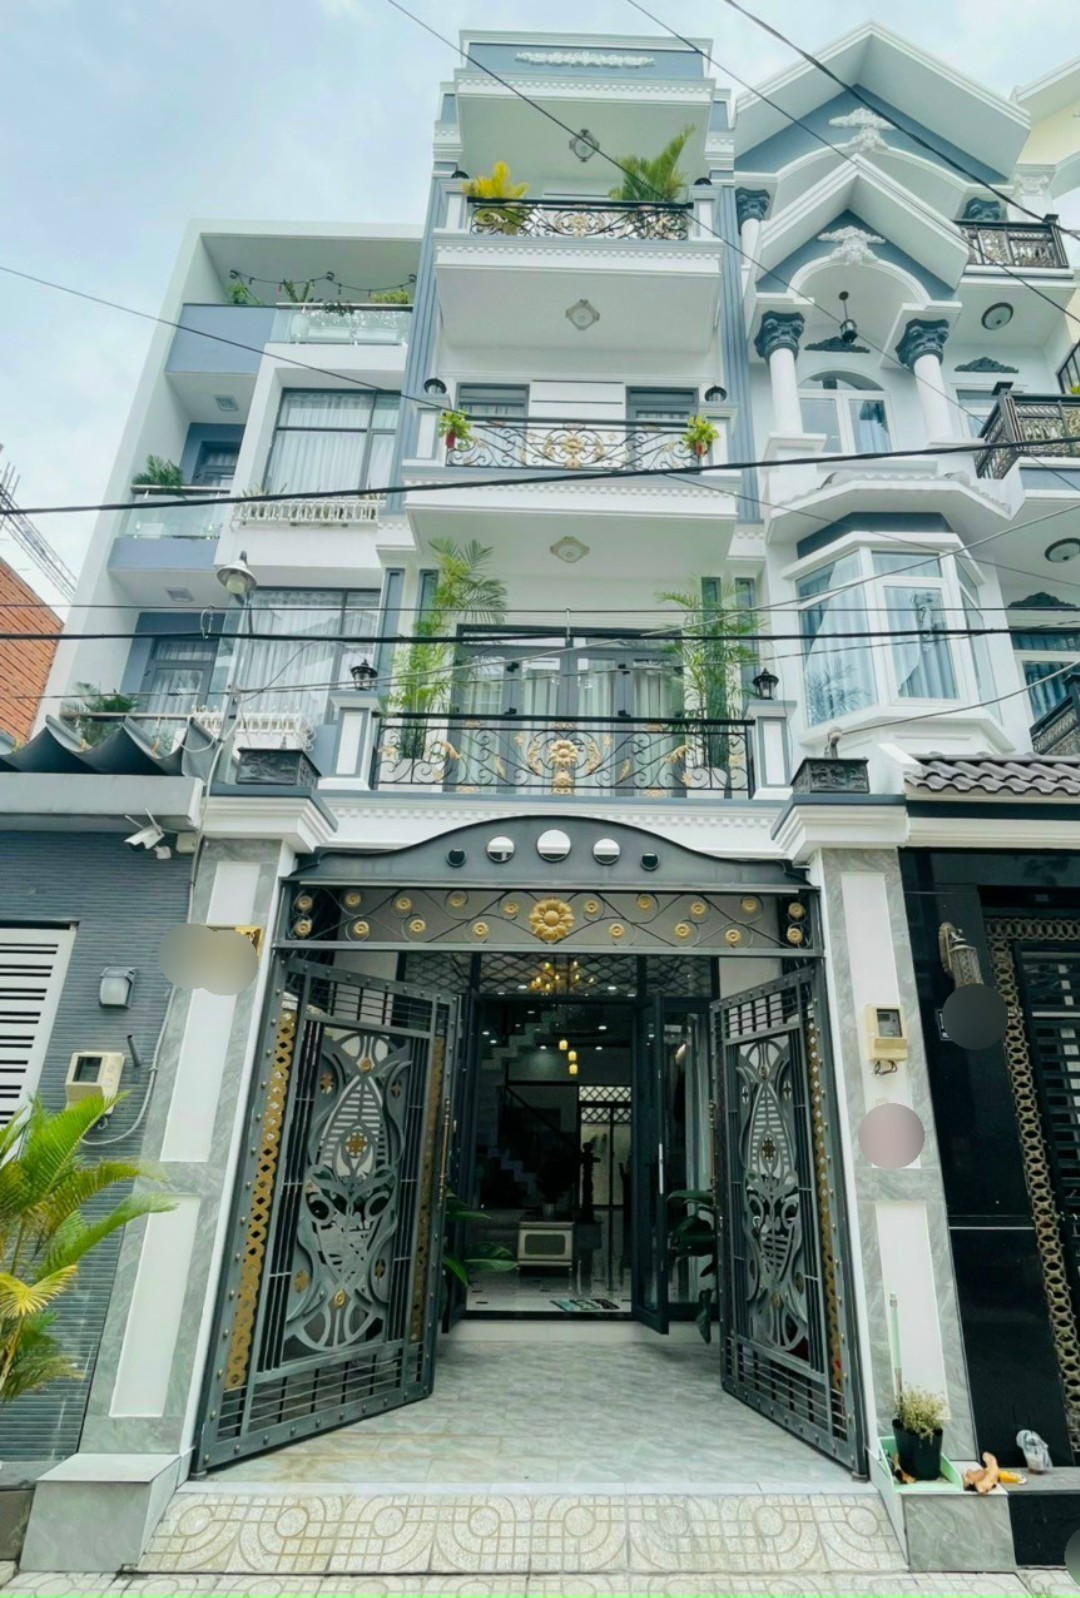 Cho thuê nhà gần sân bay Tân Sơn Nhất mặt tiền đẹp xe hơi đậu trong nhà.